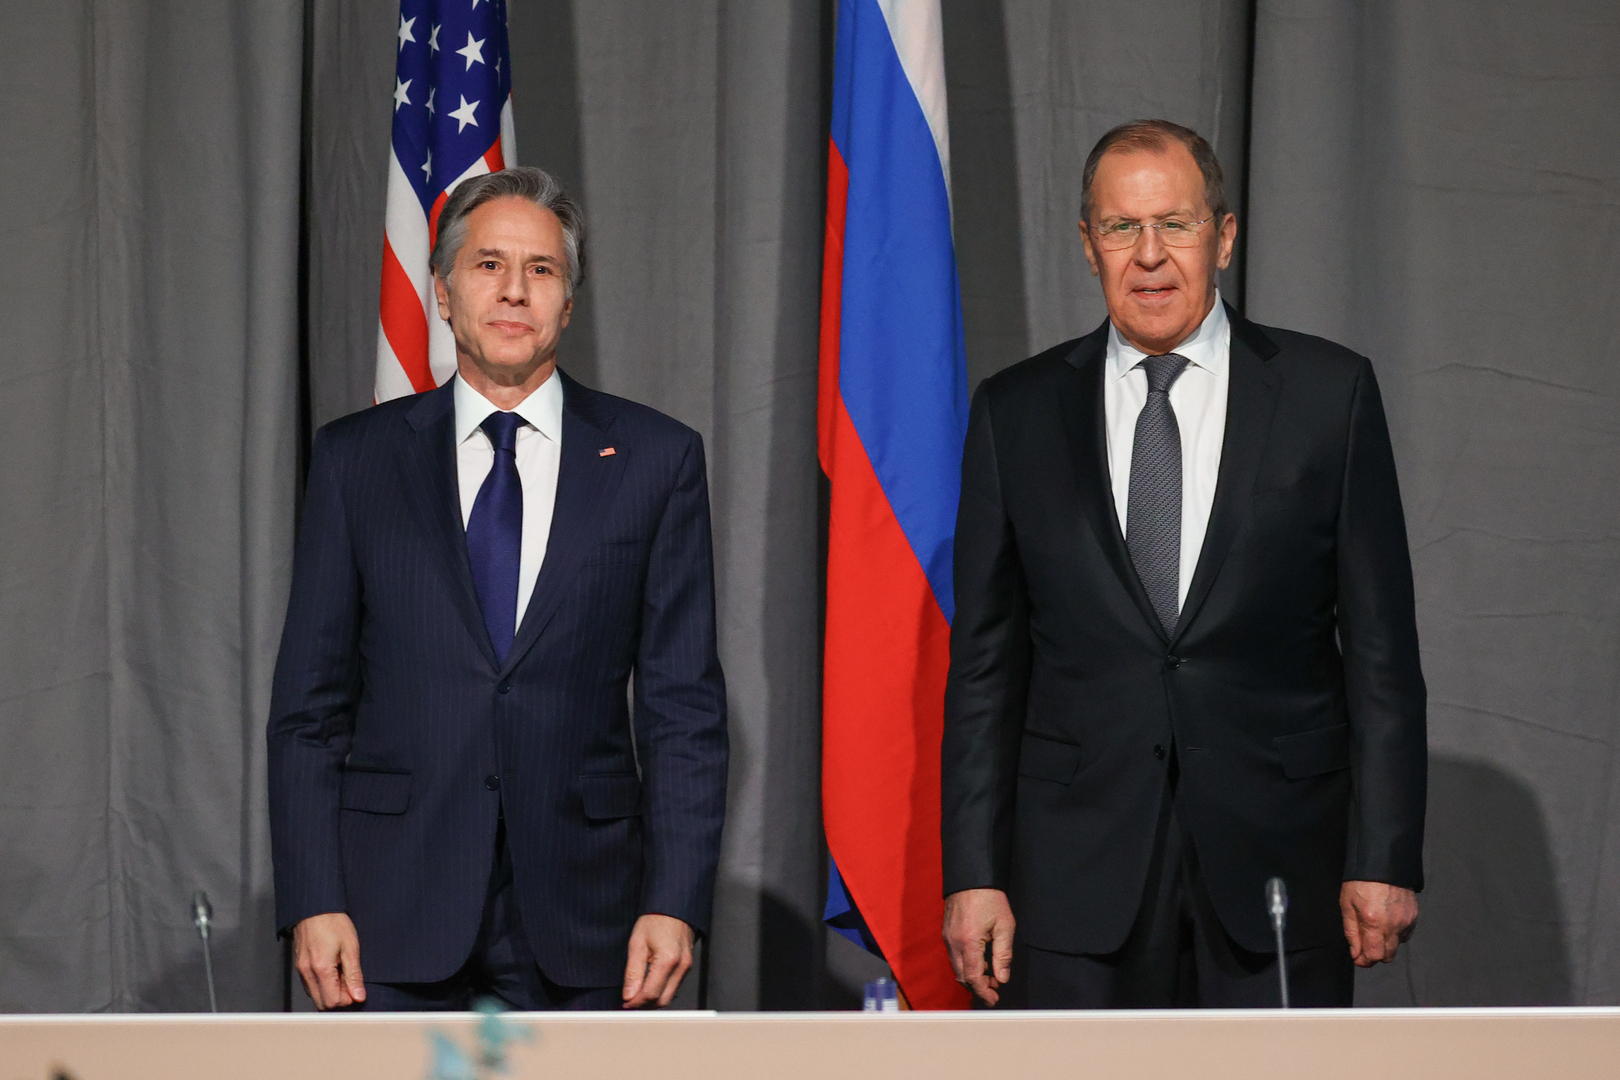 الولايات المتحدة تعلن عزمها توسيع العقوبات ضد روسيا وتشديد الرقابة على تنفيذها